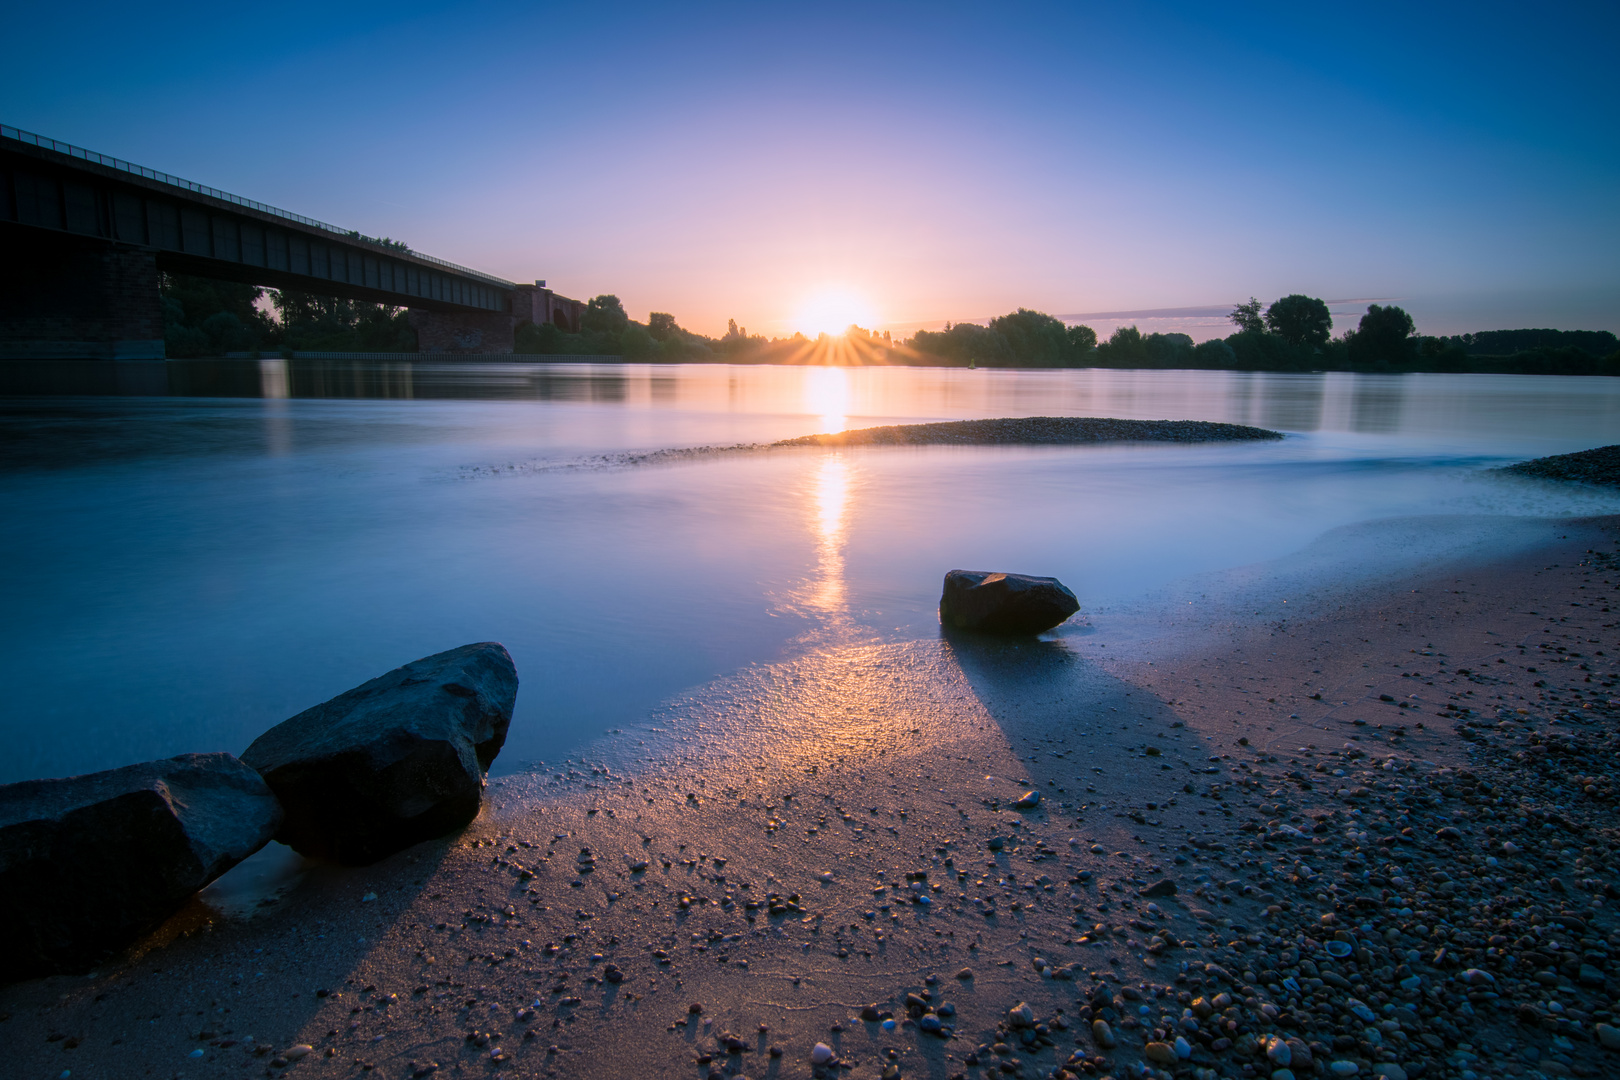 Sonnenaufgang am Rhein